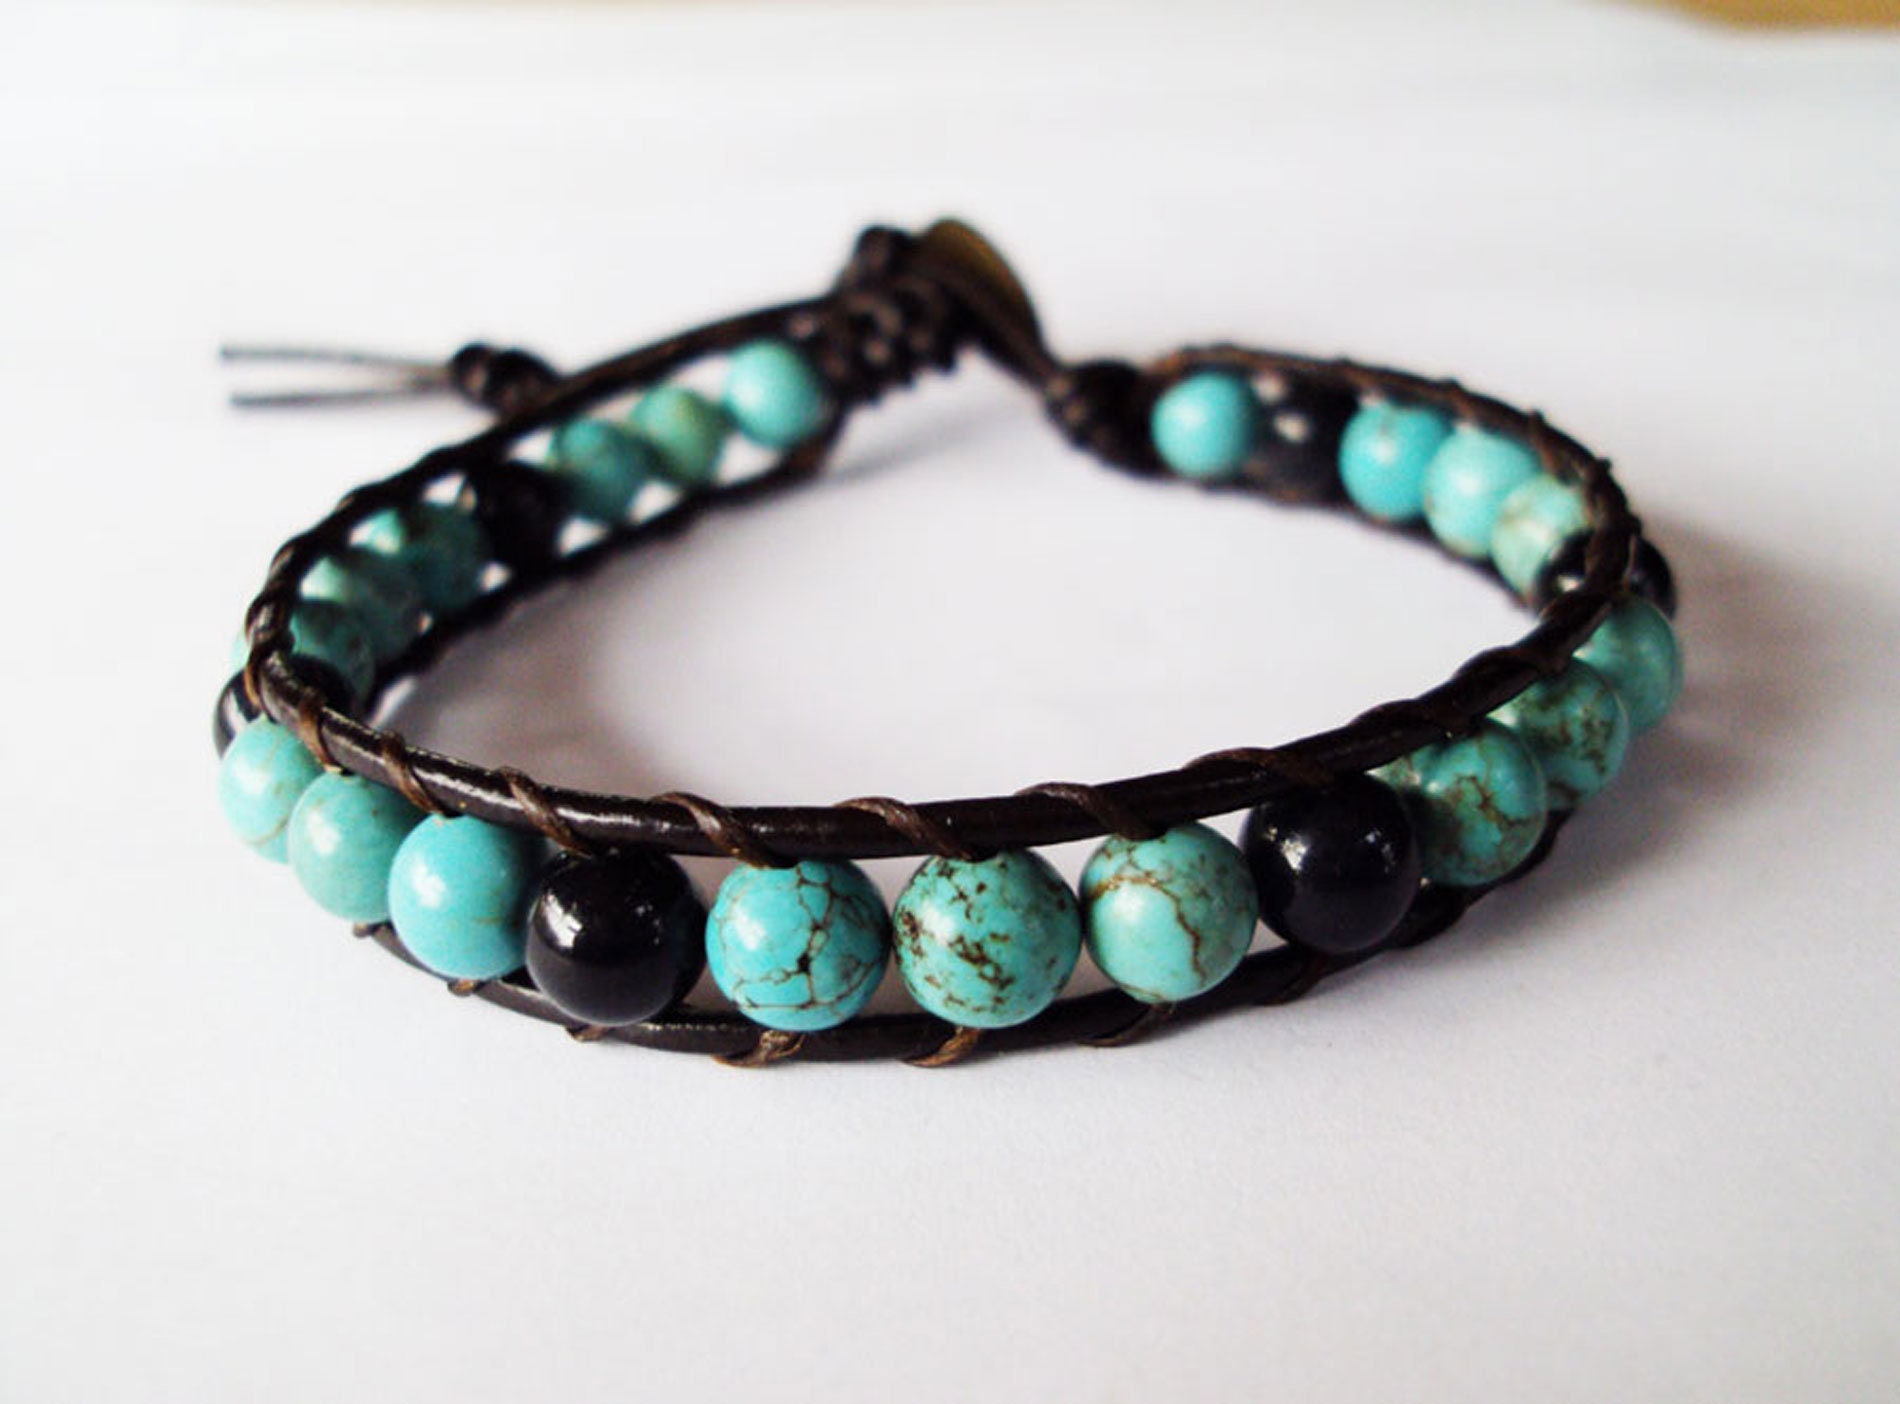 One wrap Turquoise real stone onyx stone leather bracelets men | Etsy